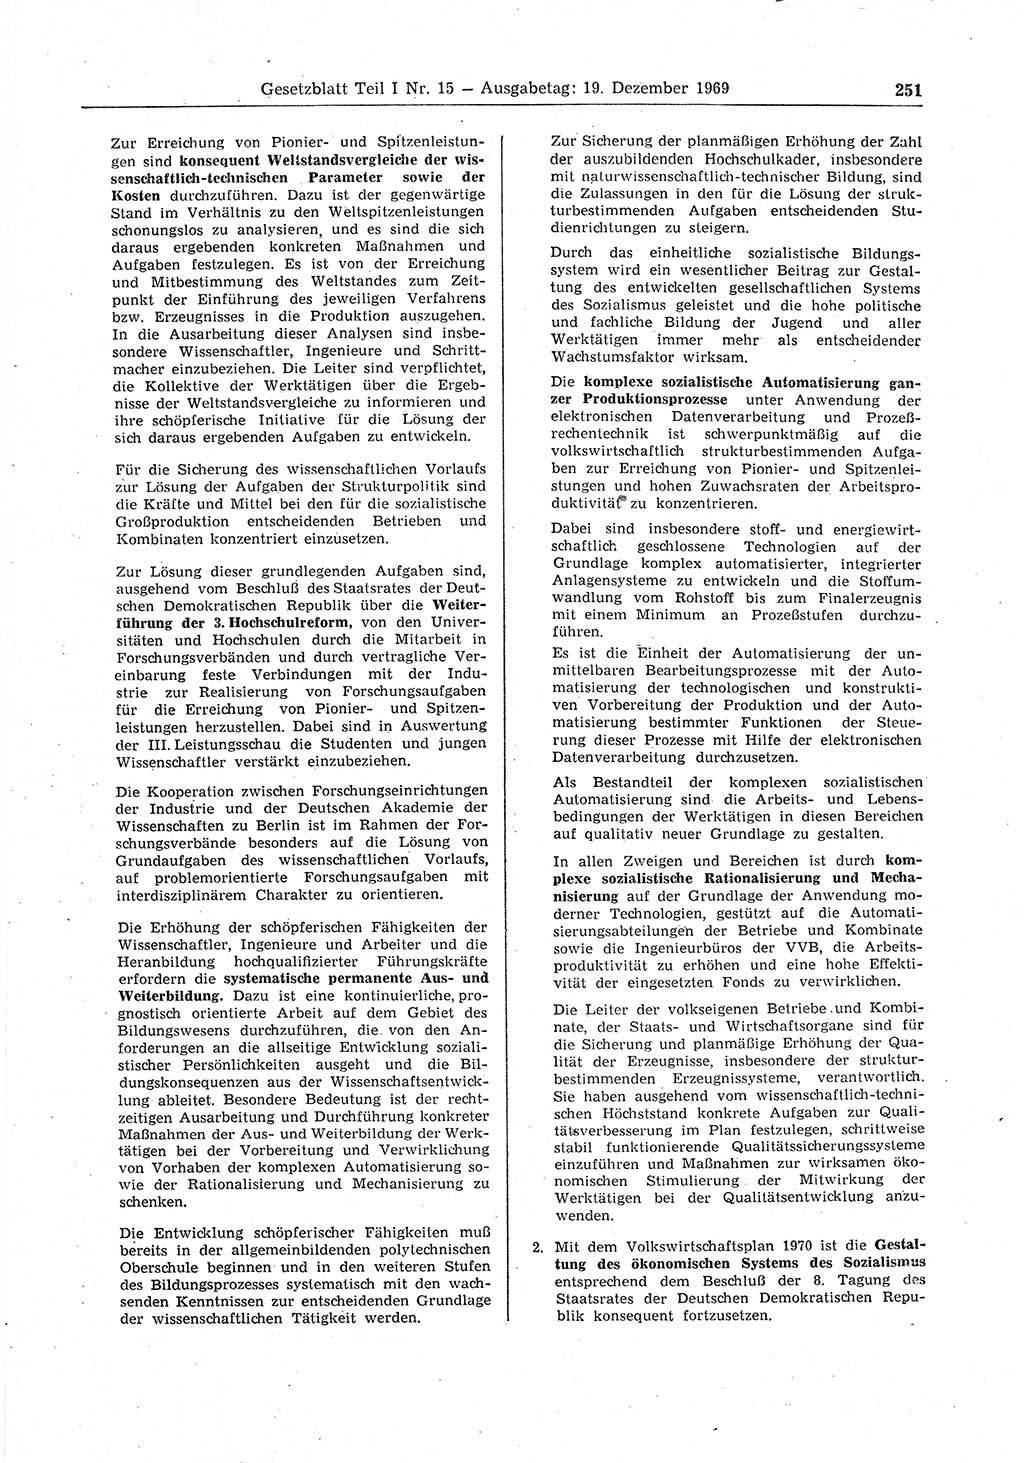 Gesetzblatt (GBl.) der Deutschen Demokratischen Republik (DDR) Teil Ⅰ 1969, Seite 251 (GBl. DDR Ⅰ 1969, S. 251)